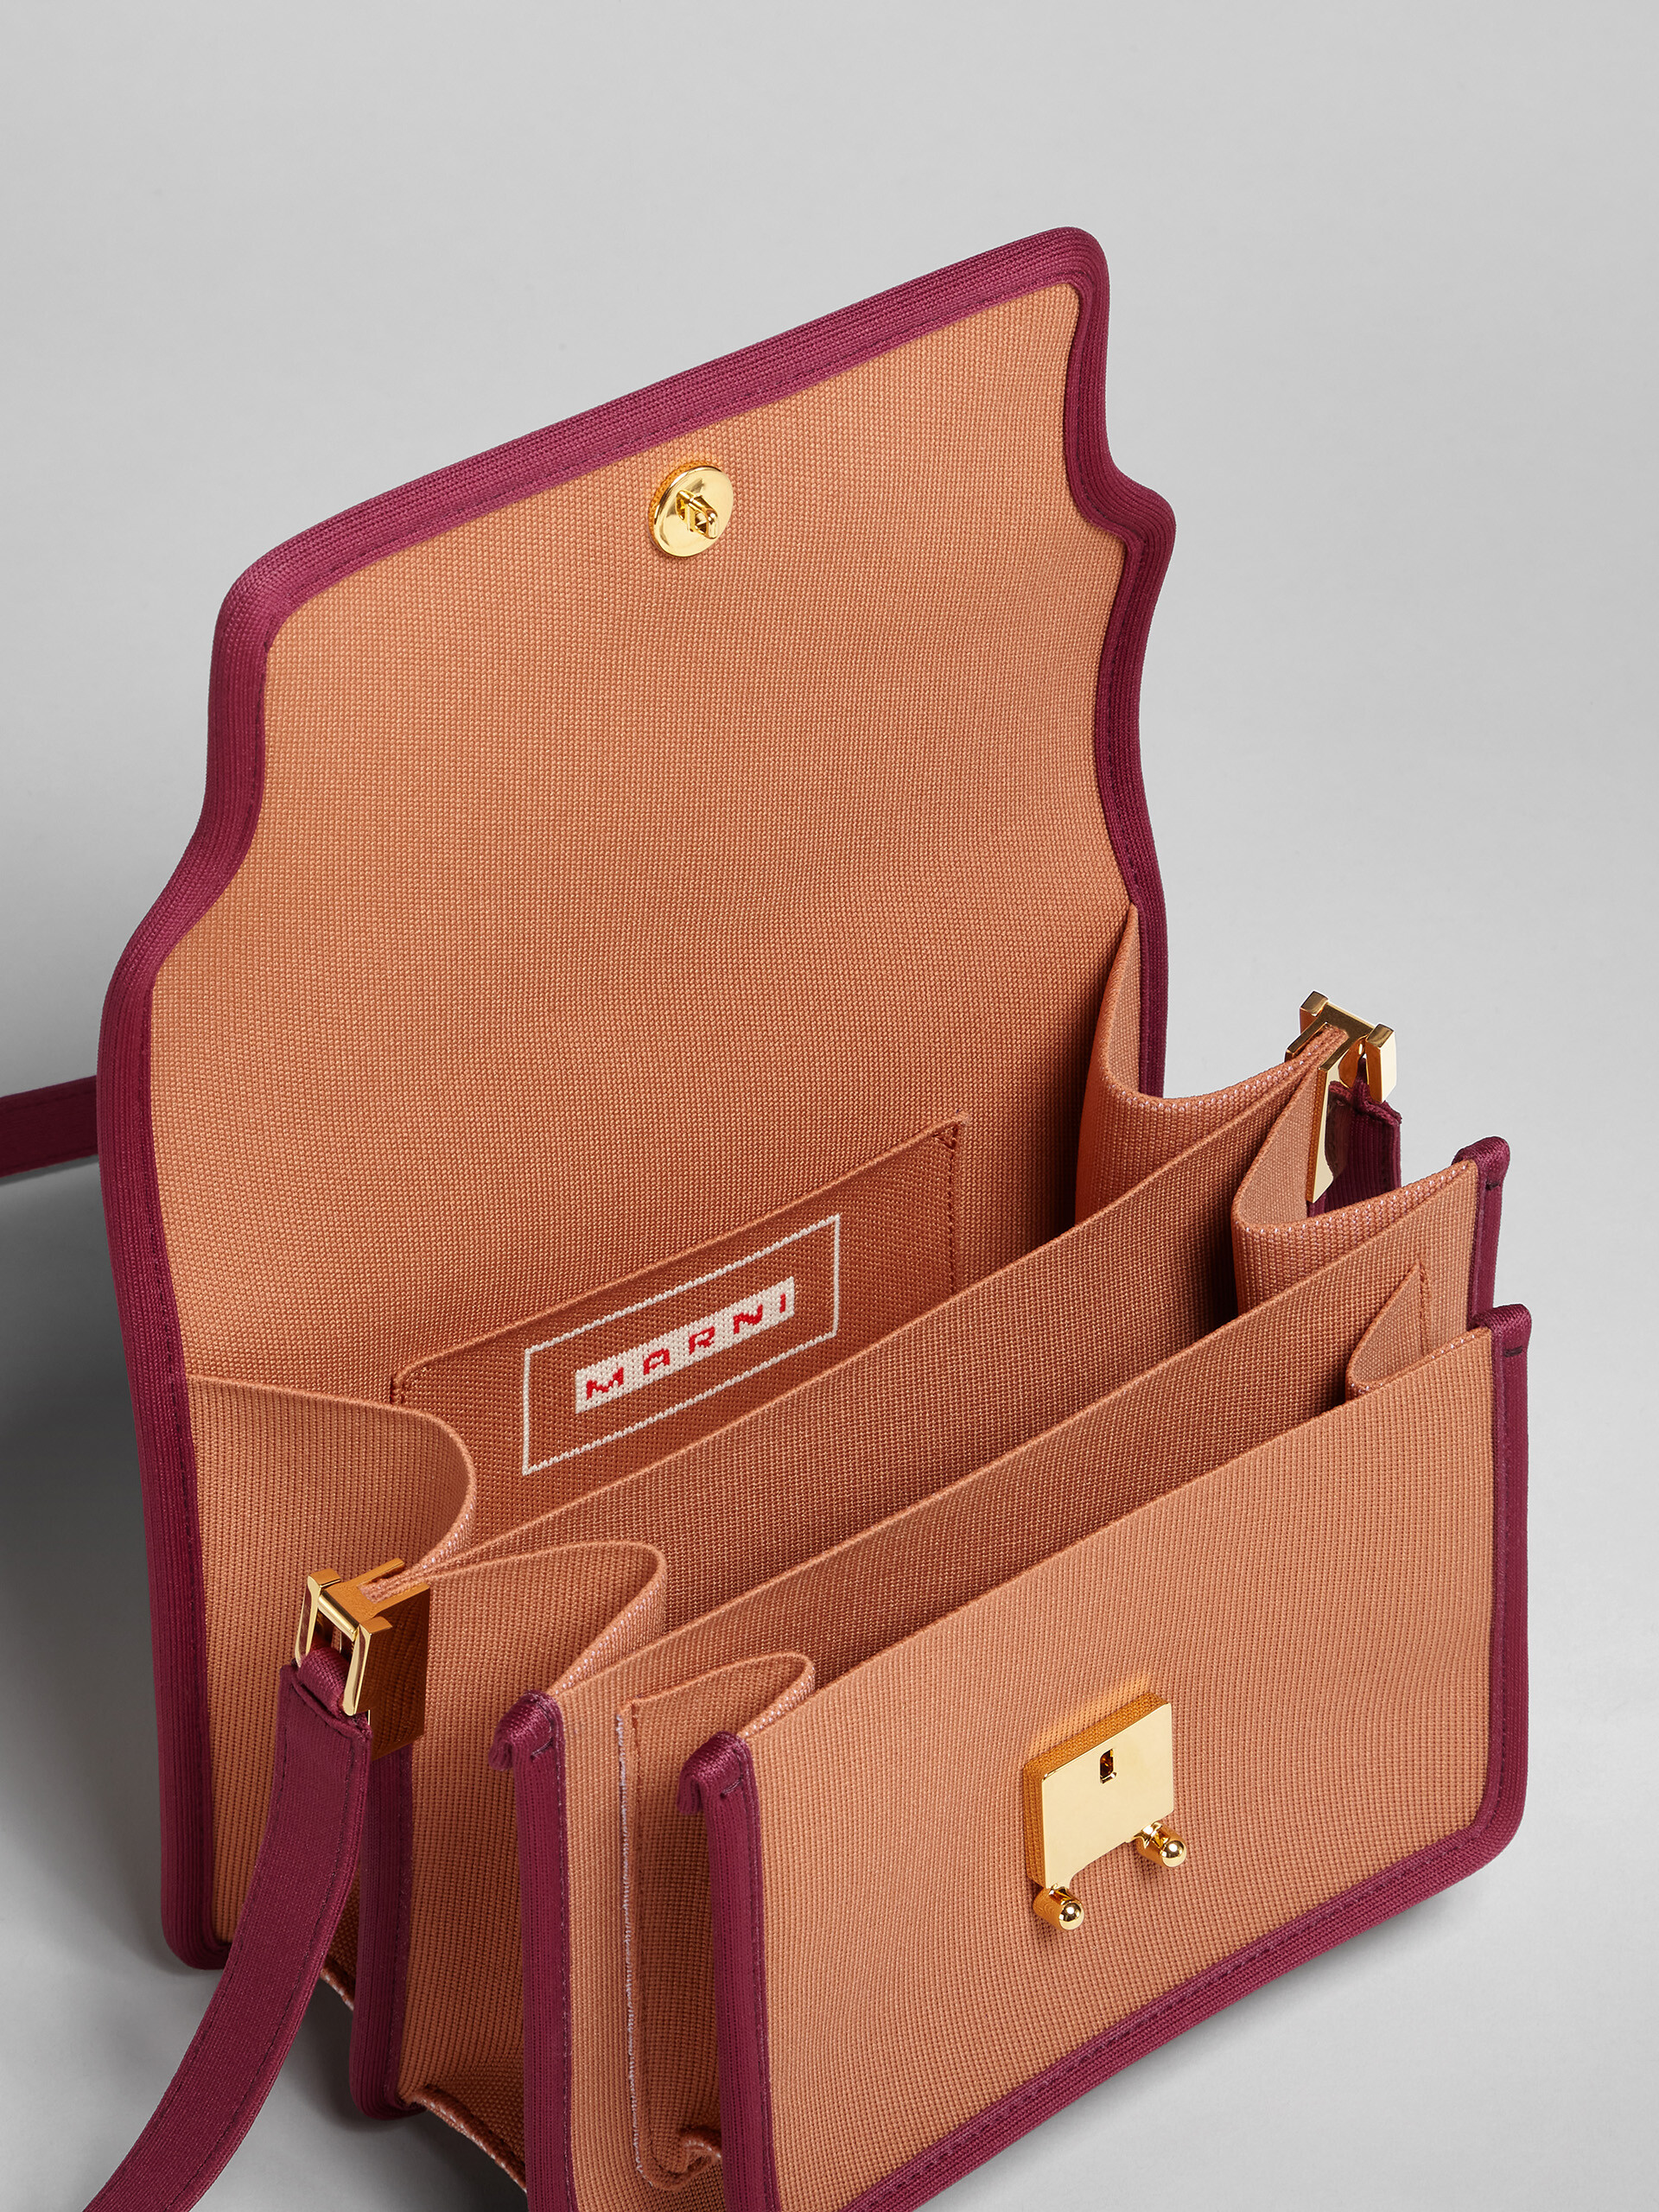 TRUNK SOFT bag media in jacquard marrone e viola - Borse a spalla - Image 4